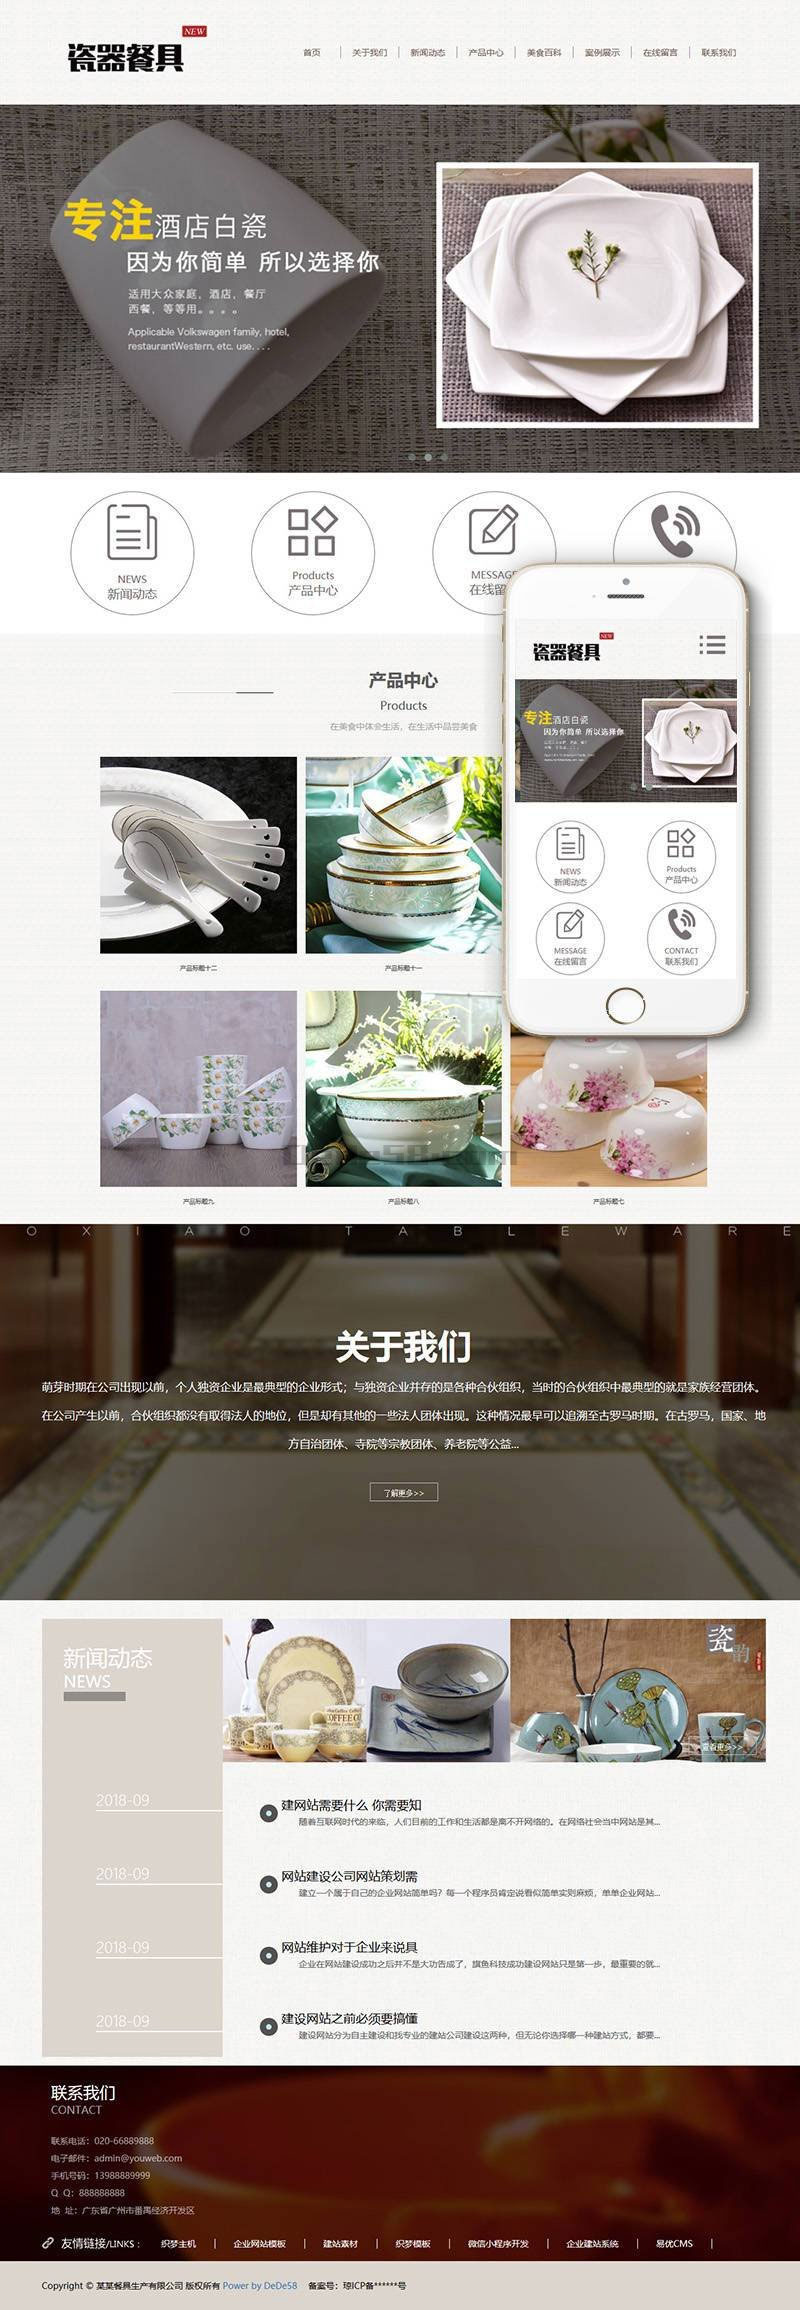 织梦dedecms相应式瓷器餐具公司网站模板(自顺应手机移动端)-零度空间